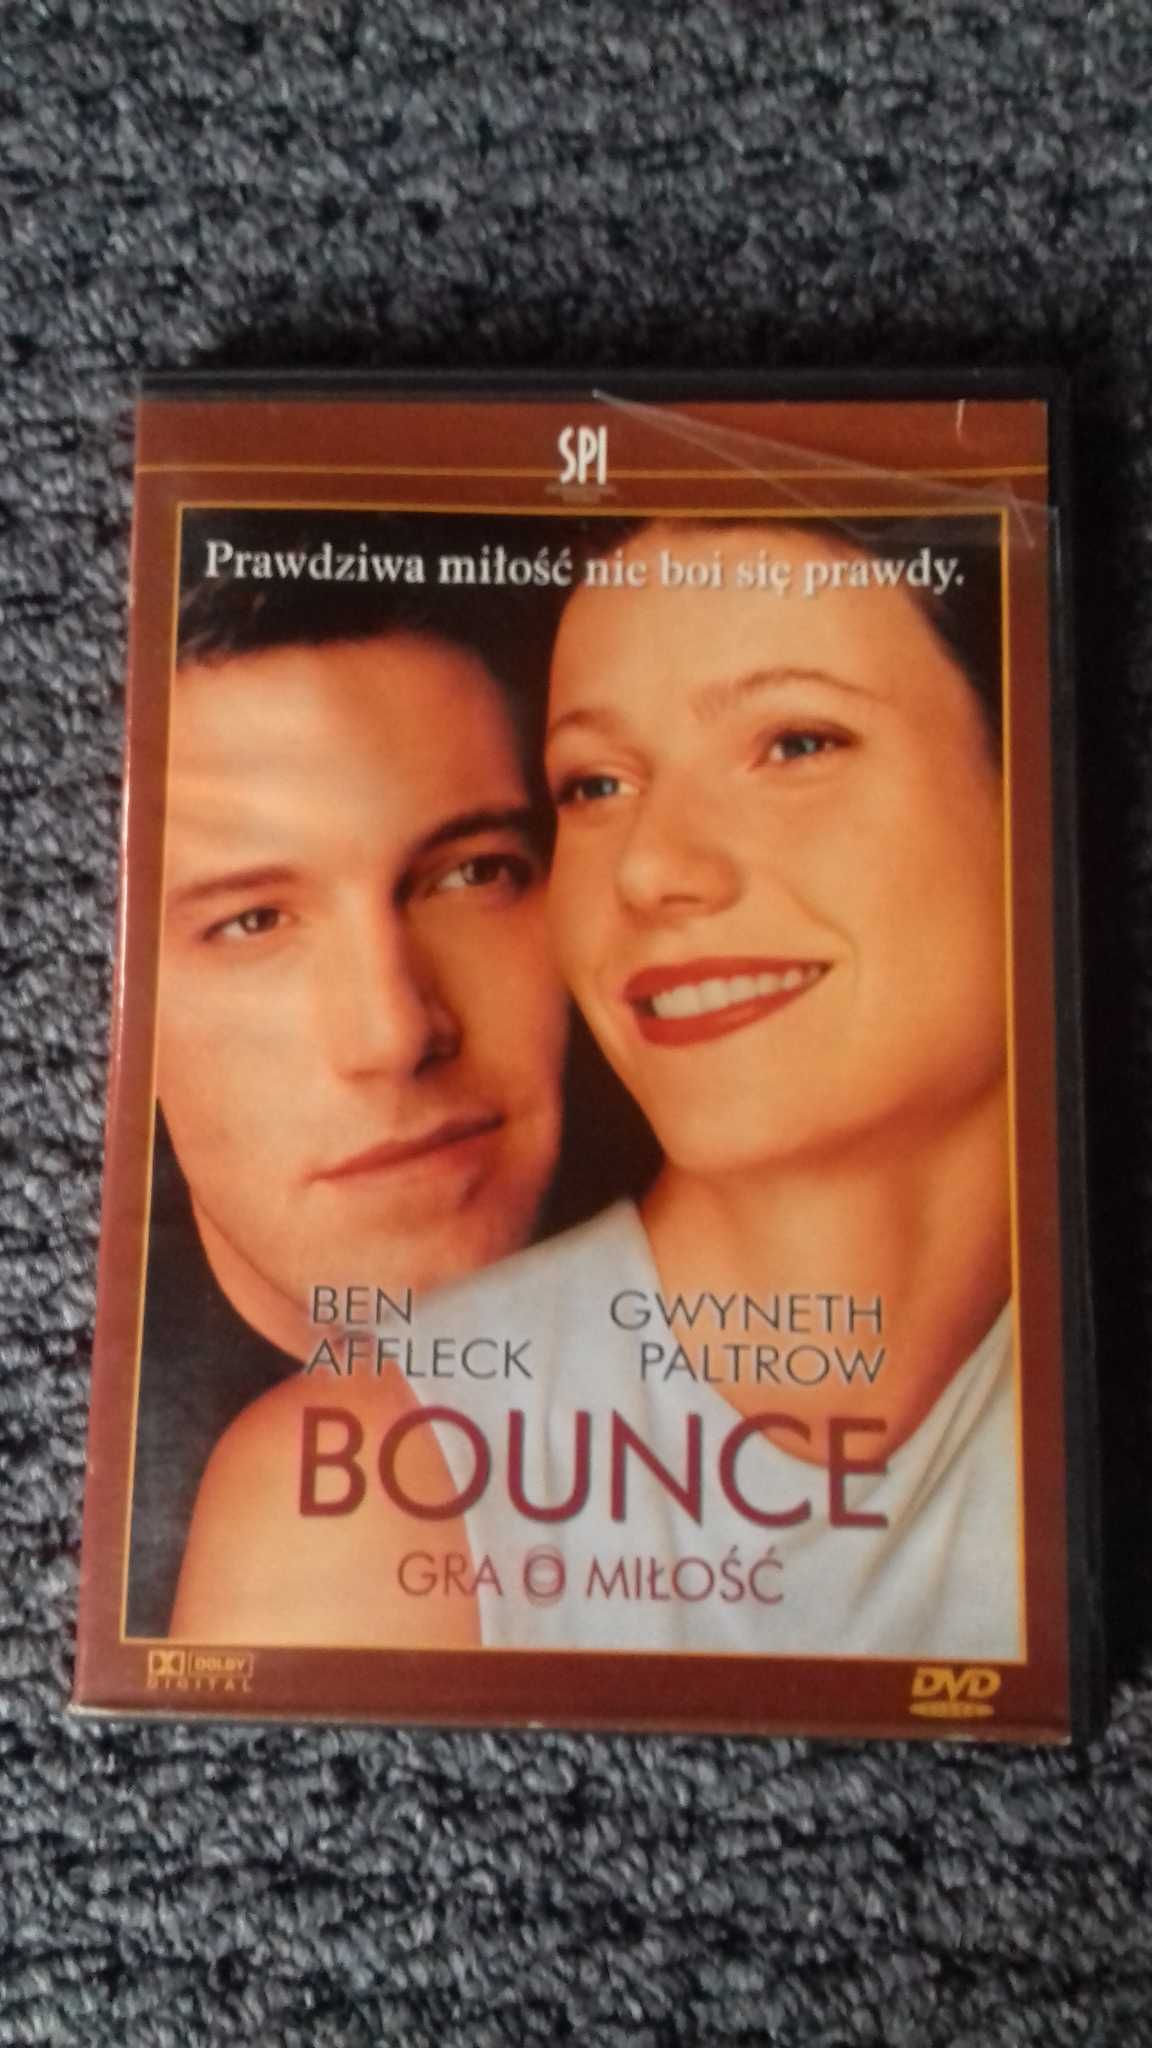 "Bounce Gra o miłość" płyta dvd Ben Affleck Gwyneth Paltrow